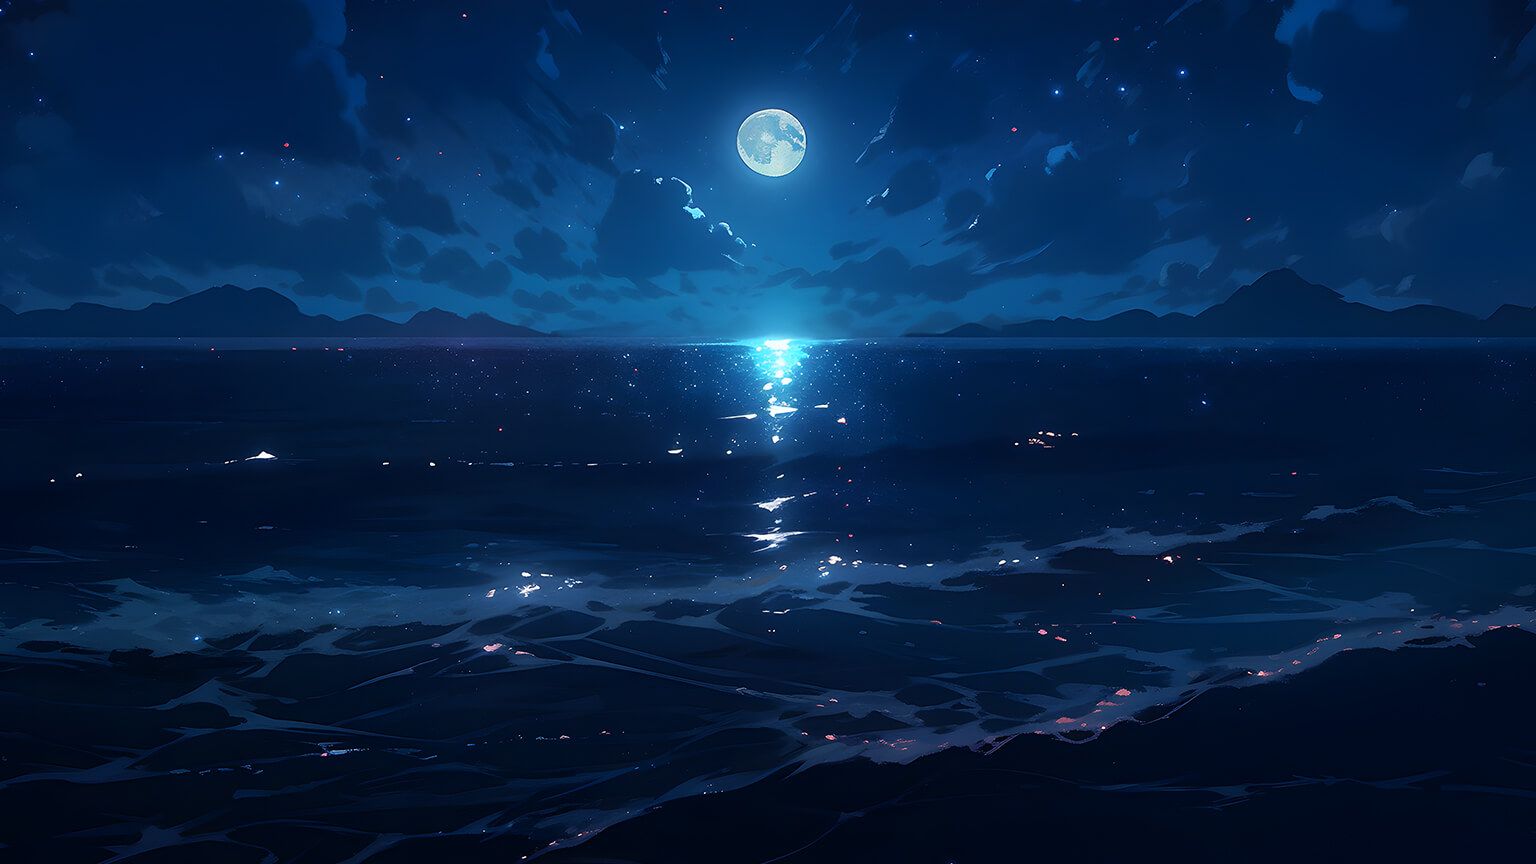  PC Full HD Hintergrundbild 1536x864. Aesthetic Night Ocean Desktop Wallpaper Ocean Wallpaper